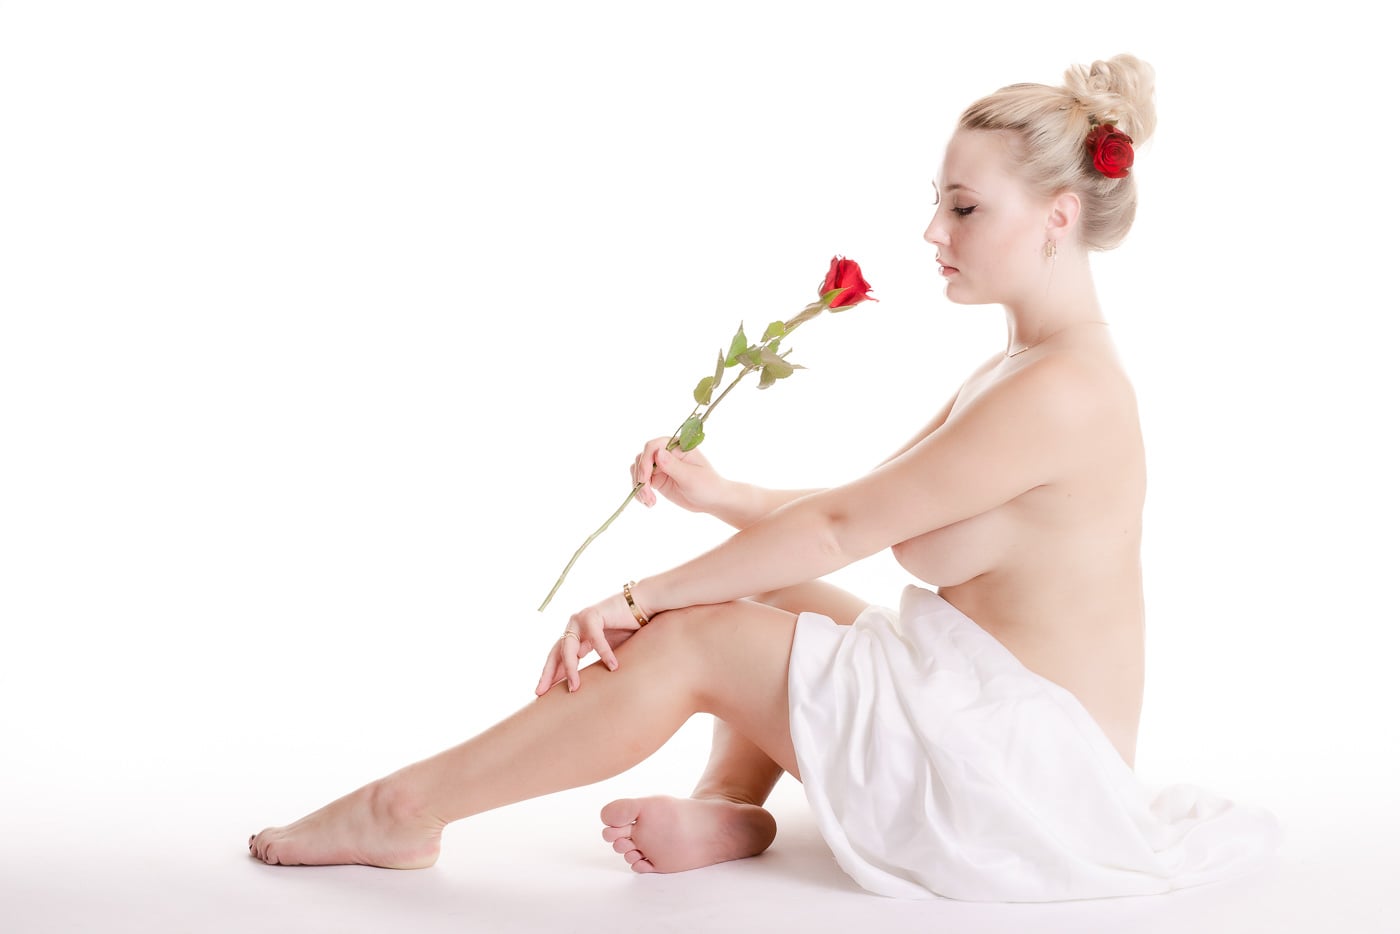 Ung nøgen kvinde siddende på gulvet, som dufter til en rød rose